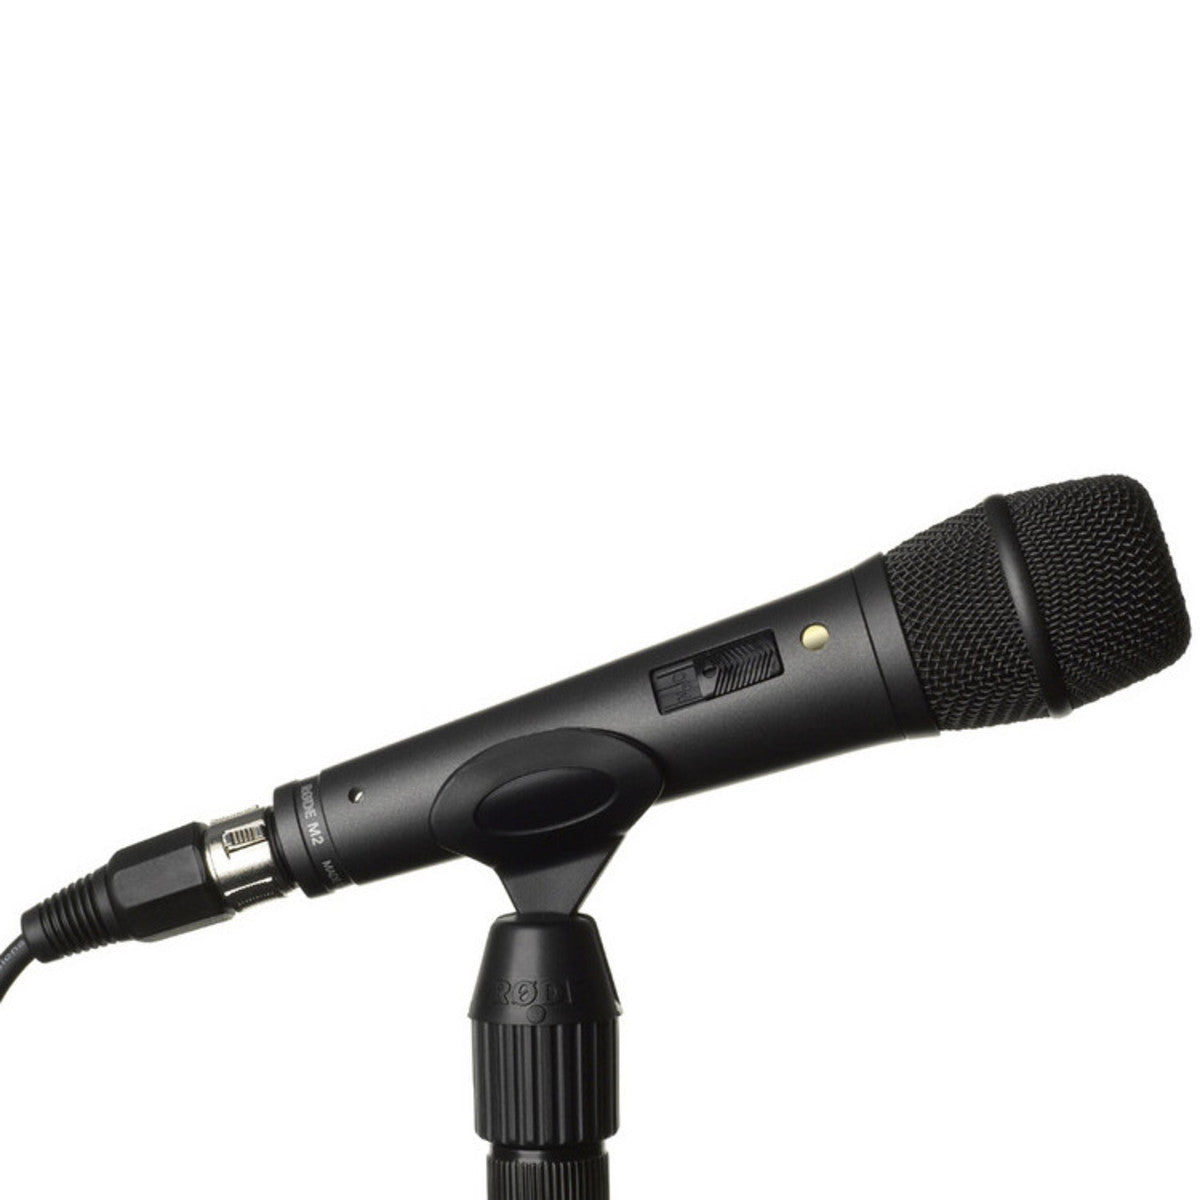 RØDE M2 Supercardioid Condenser Handheld Vocal Microphone